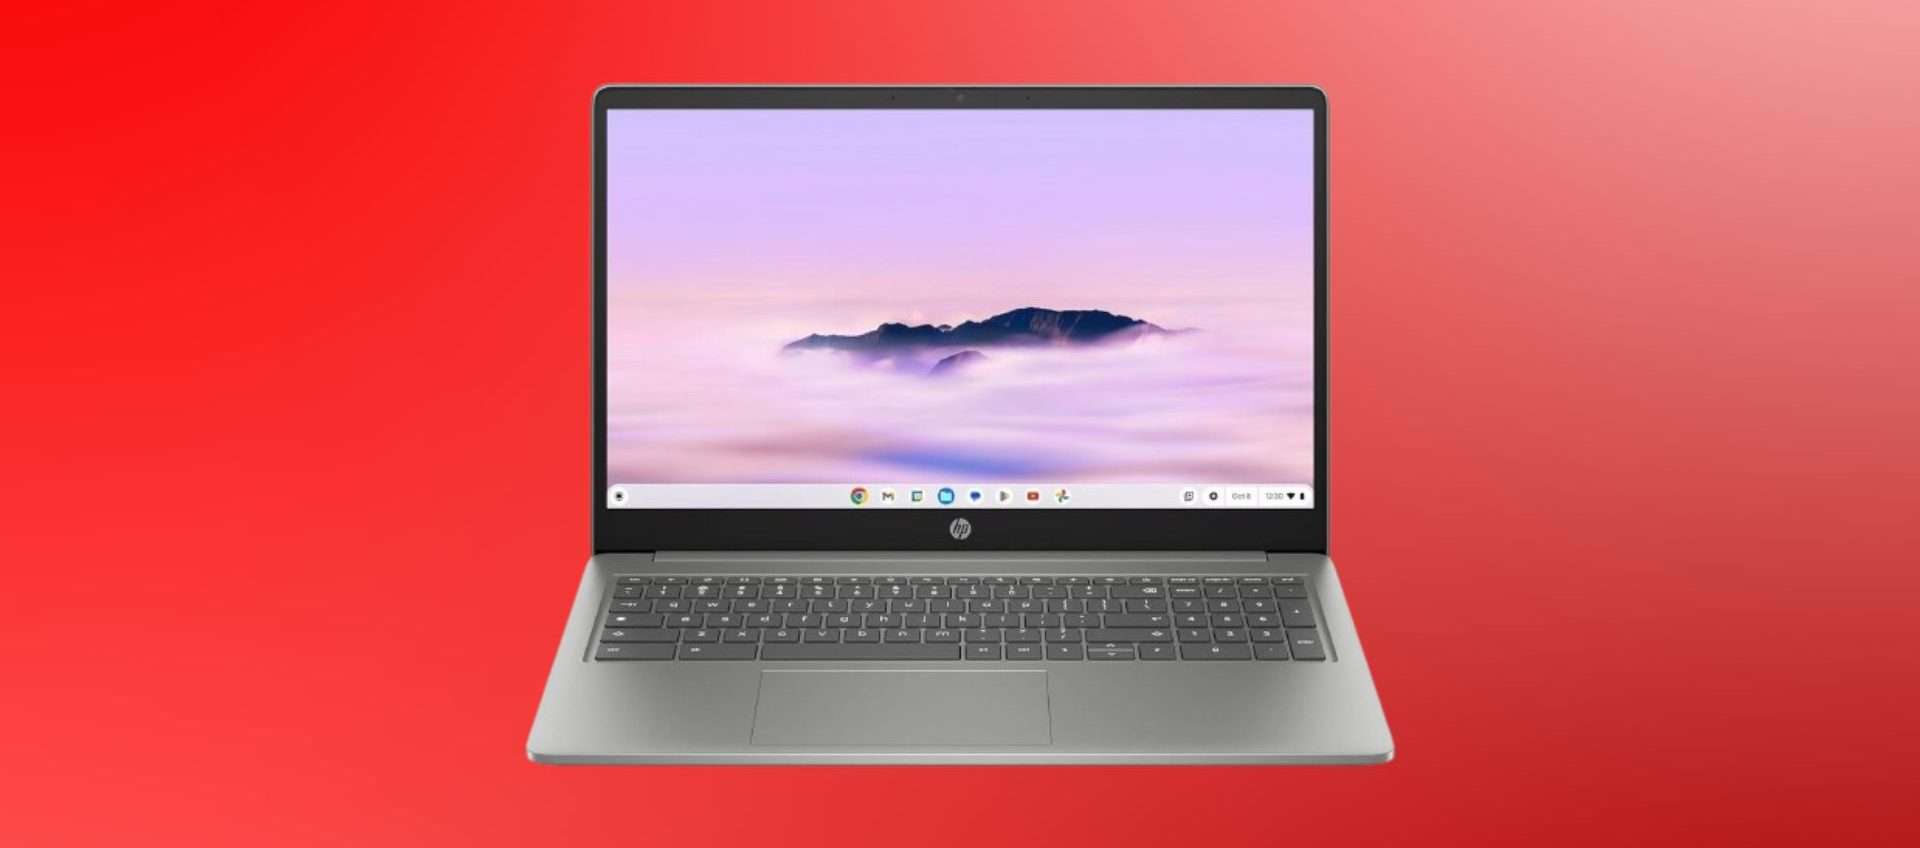 Chromebook della HP in super offerta: oggi lo paghi meno di 400€